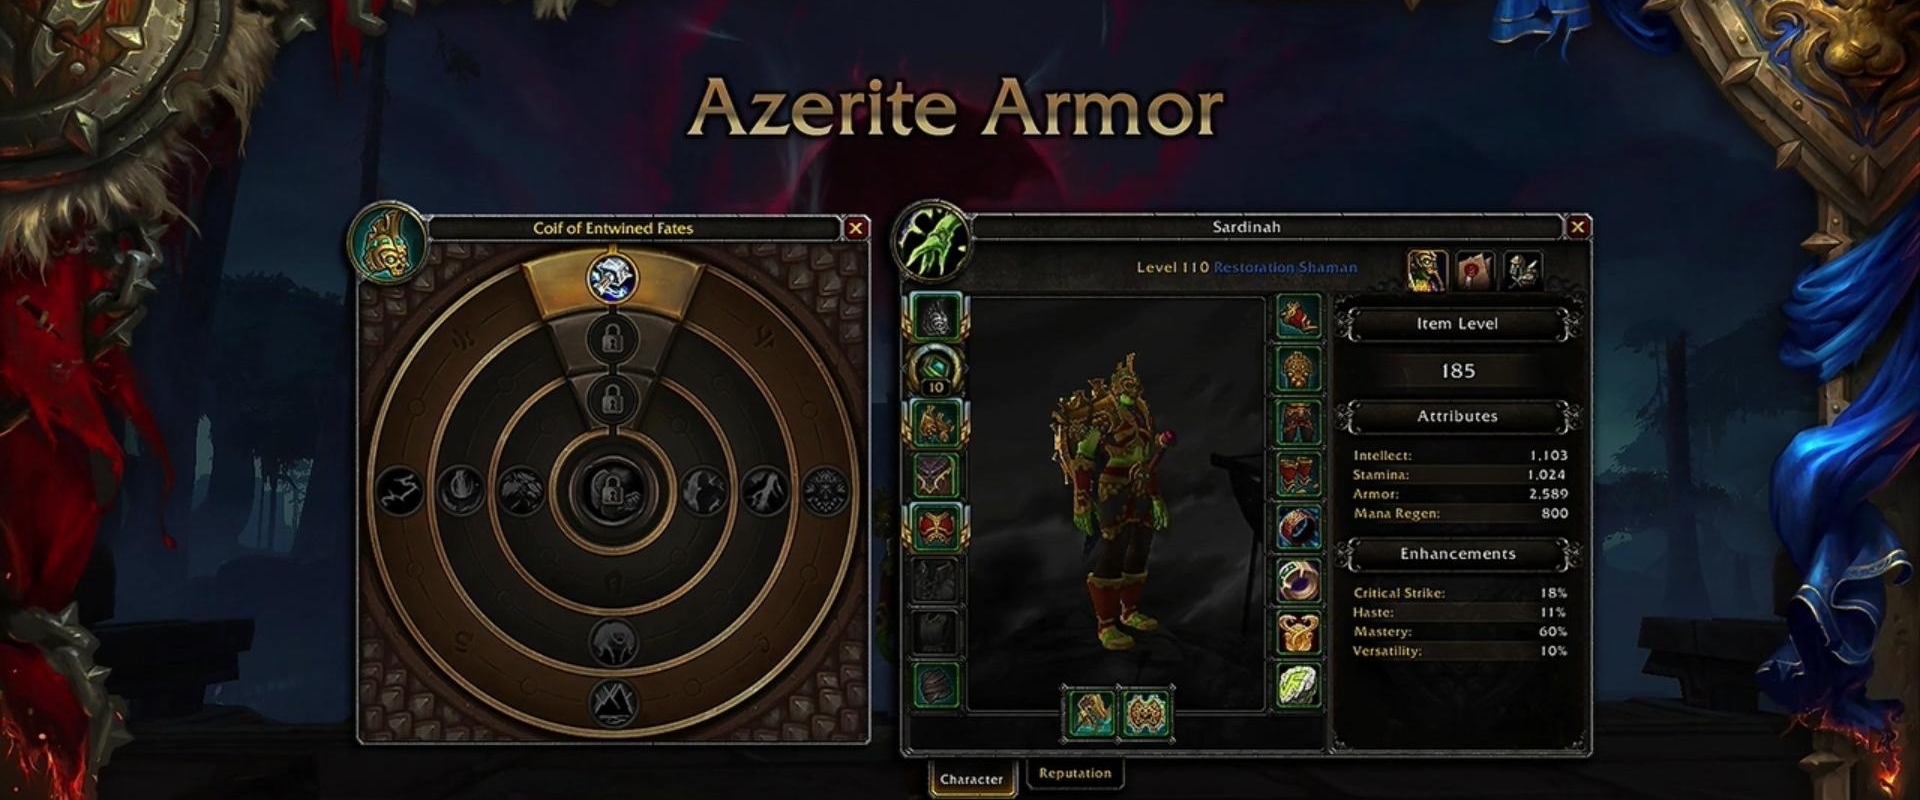 Vér és verejték árán, de javít az Azerite Armorok helyzetén a Blizzard